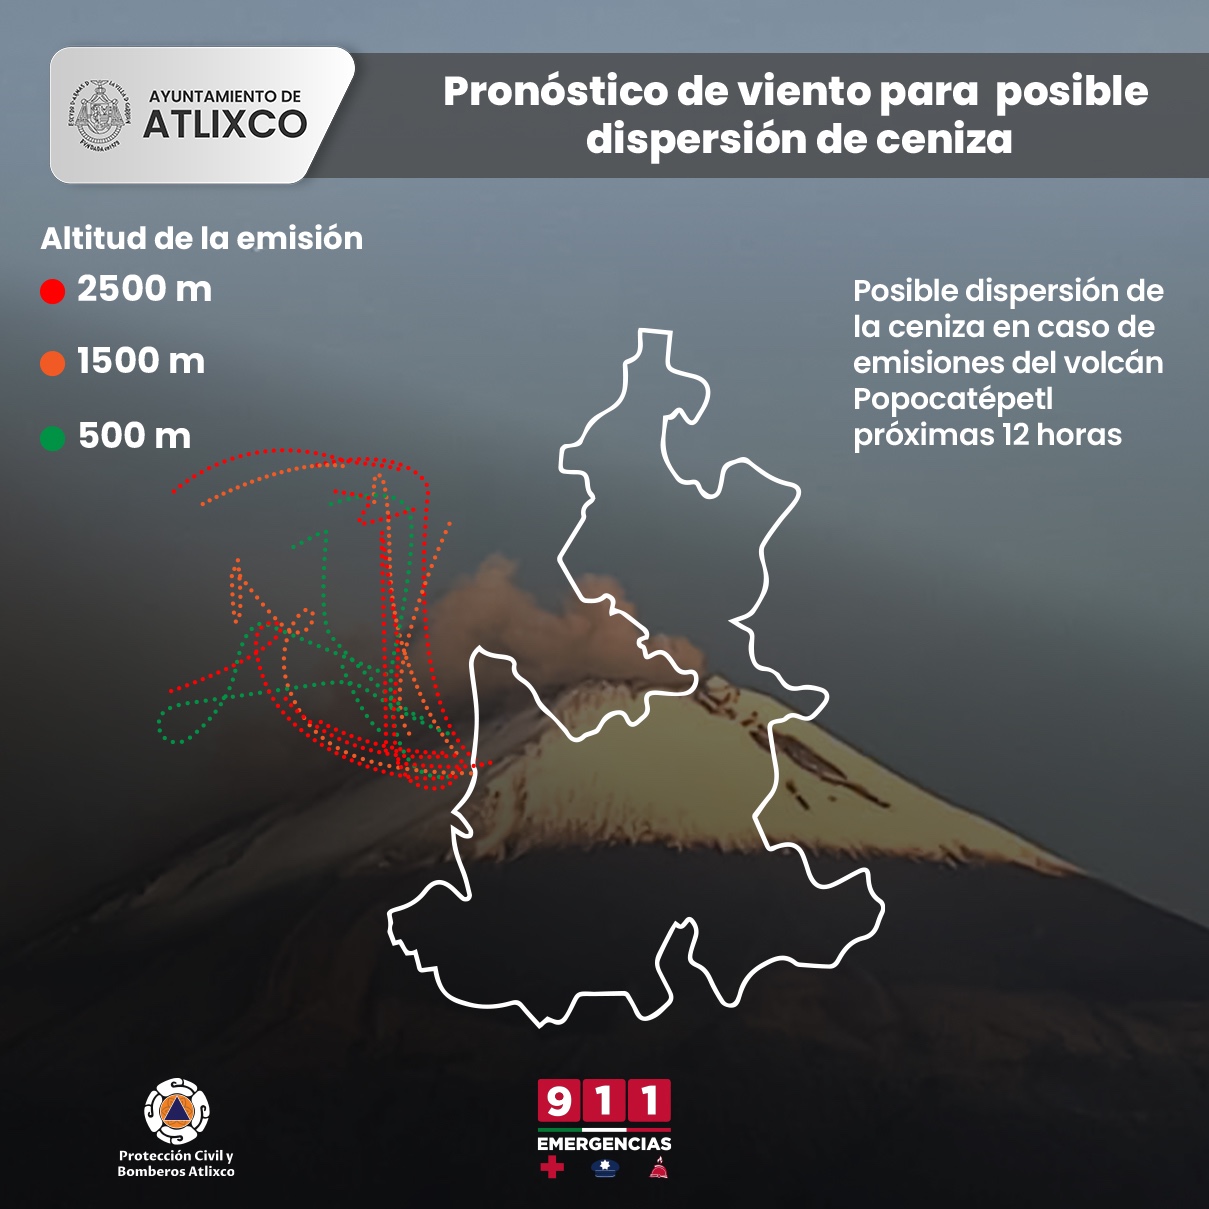 Ayuntamiento de Atlixco informa sobre la posible dispersión de ceniza